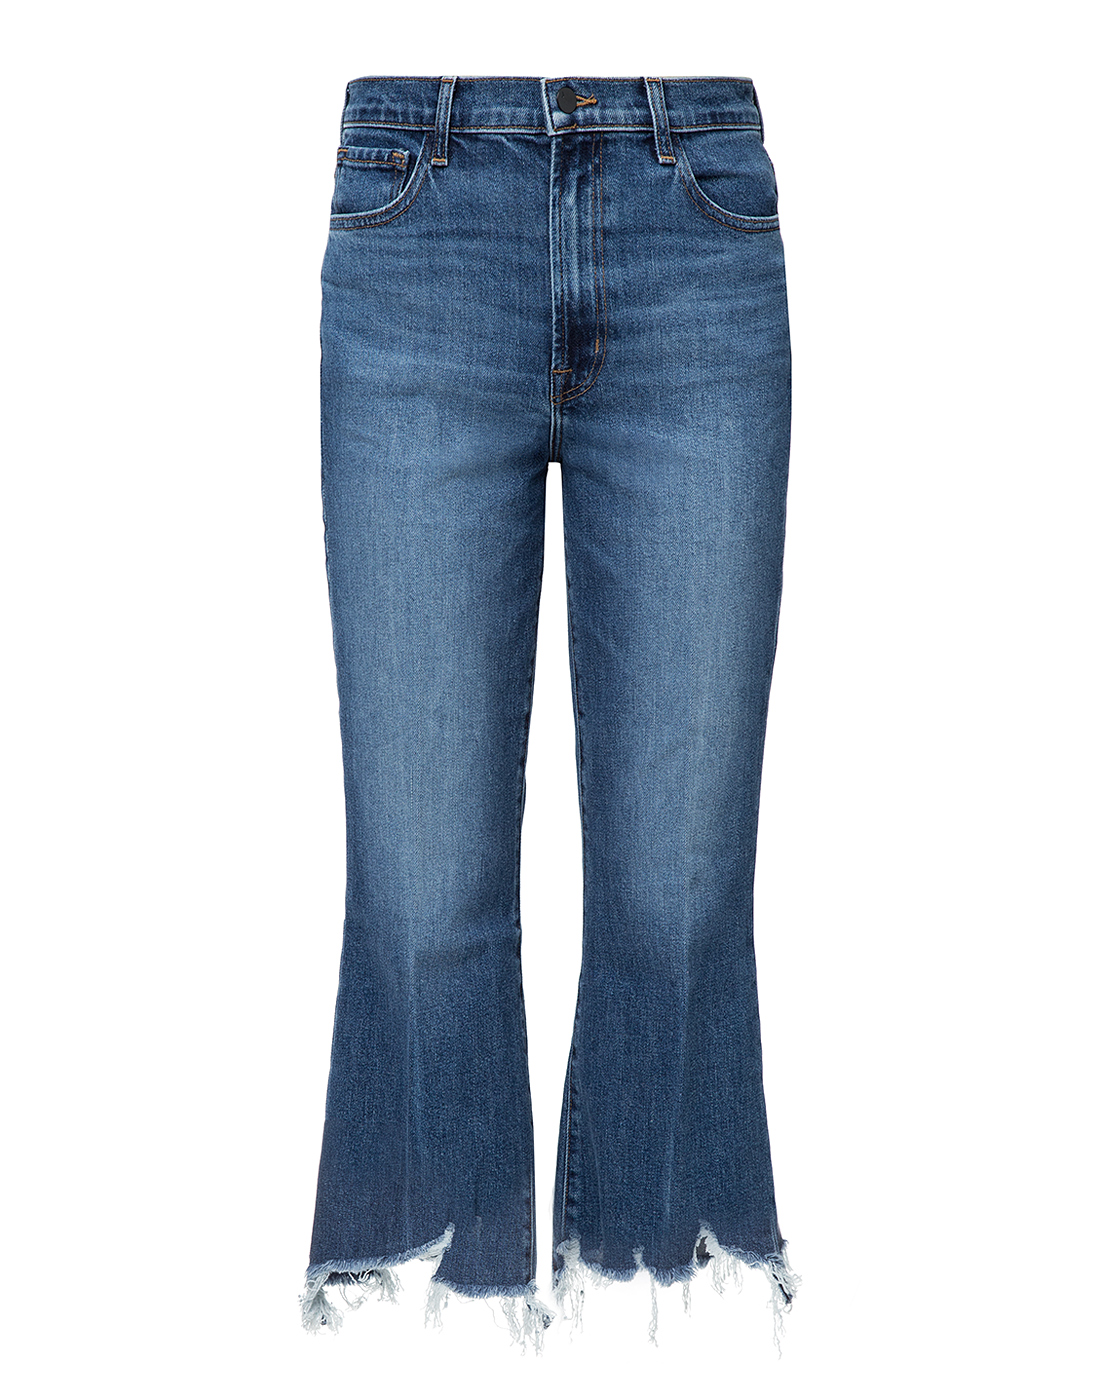 Женские синие джинсы J BRAND SJB002441/A-1